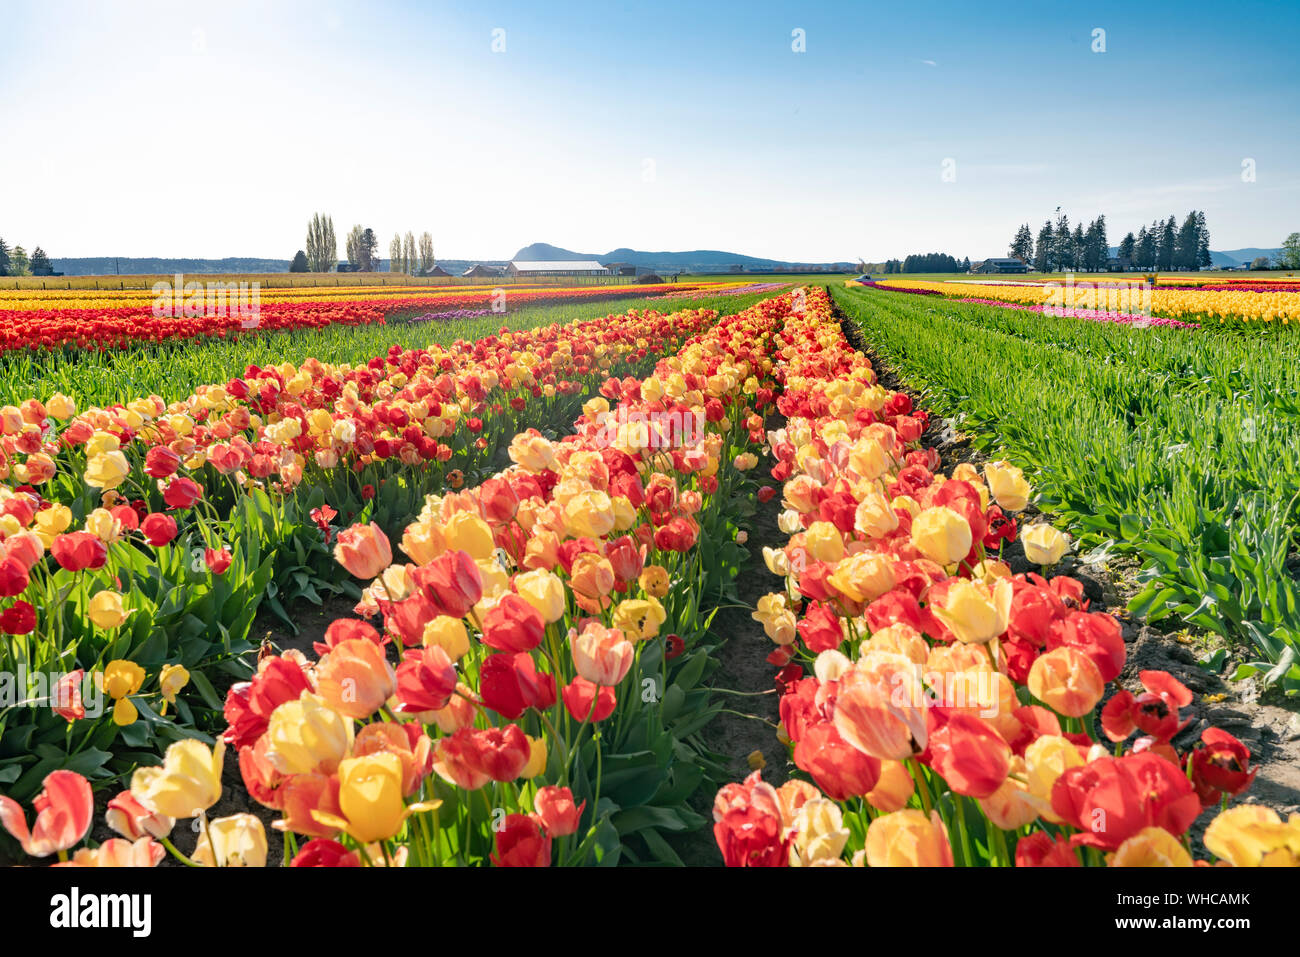 Bright multi-colored tulip field landscape. Stock Photo